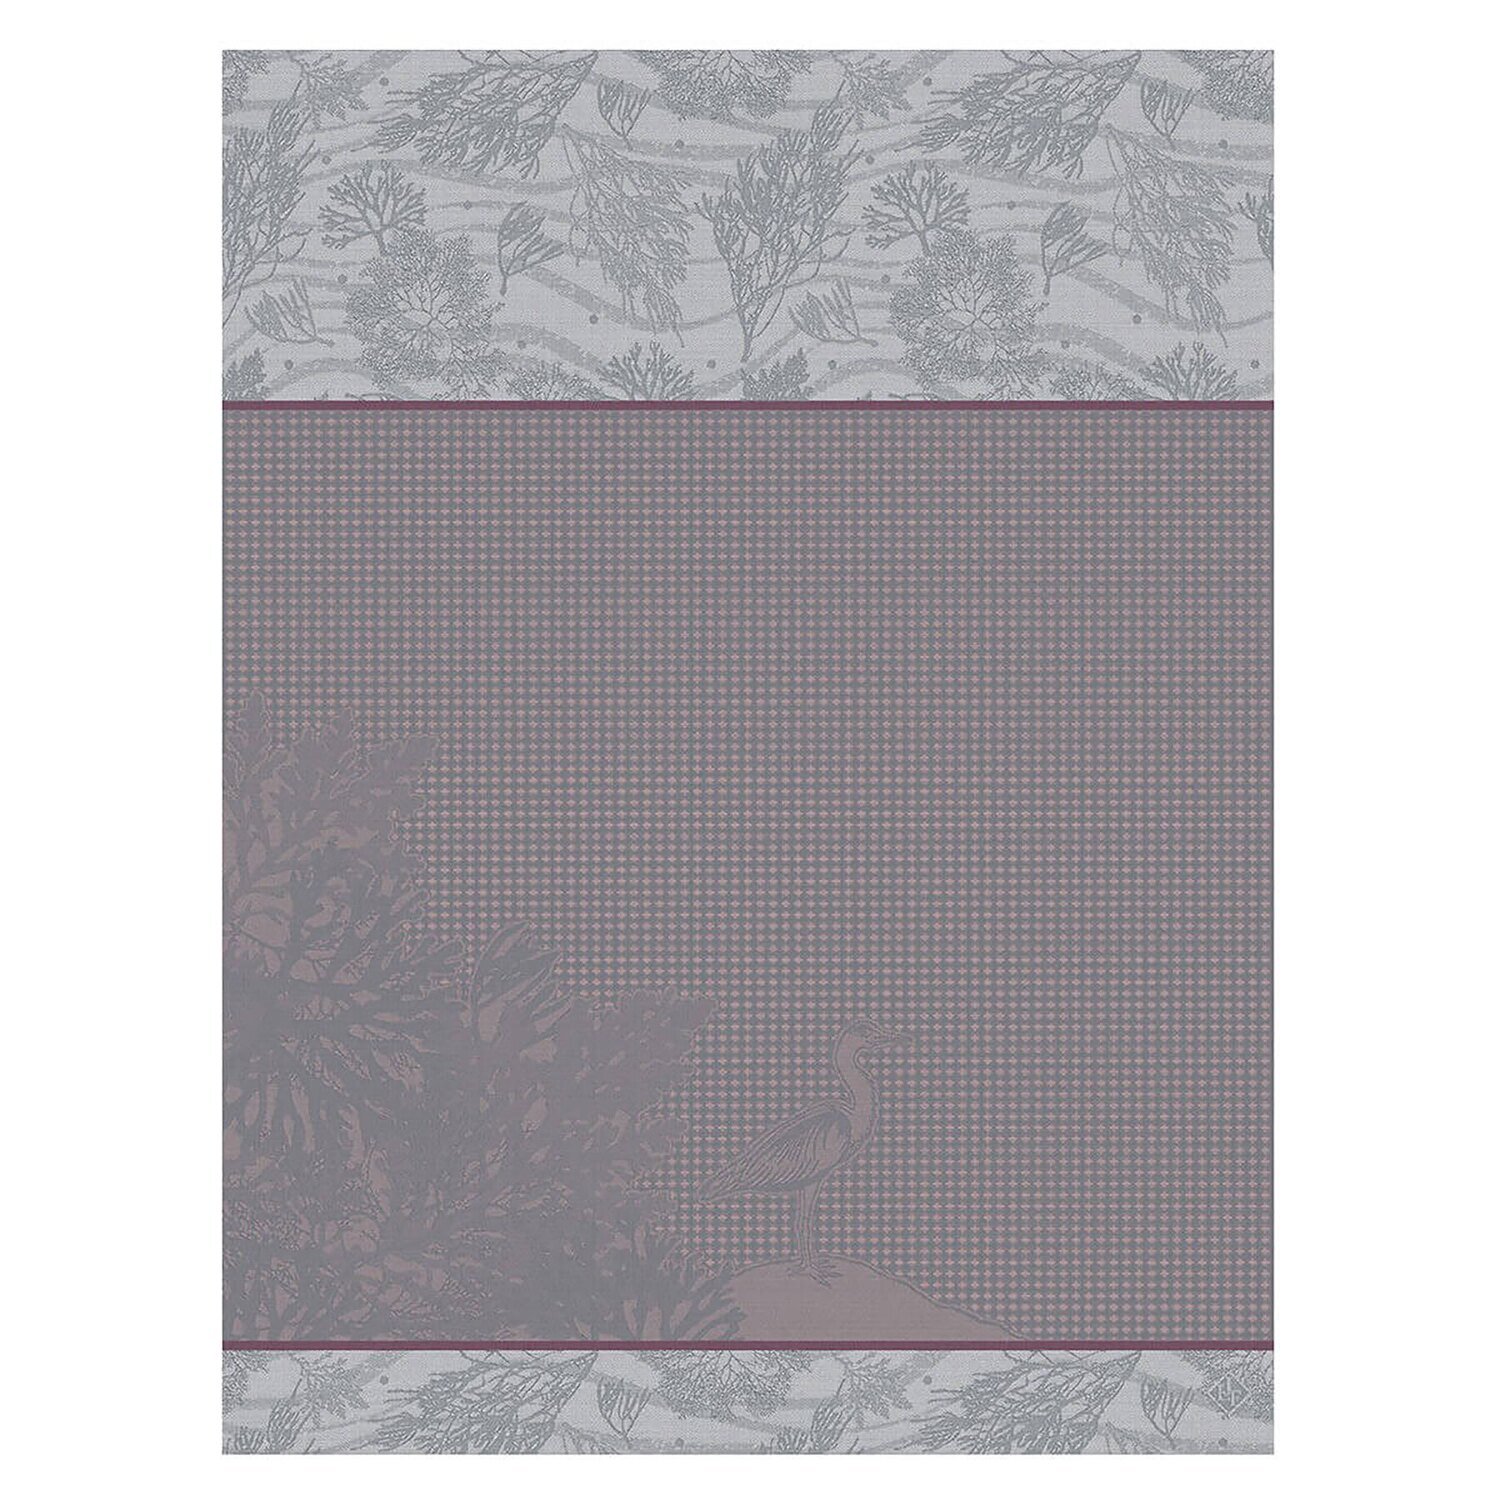 Le Jacquard Francais Hand Towel Marais Salants Pink 100% Cotton 26806 Set of 4